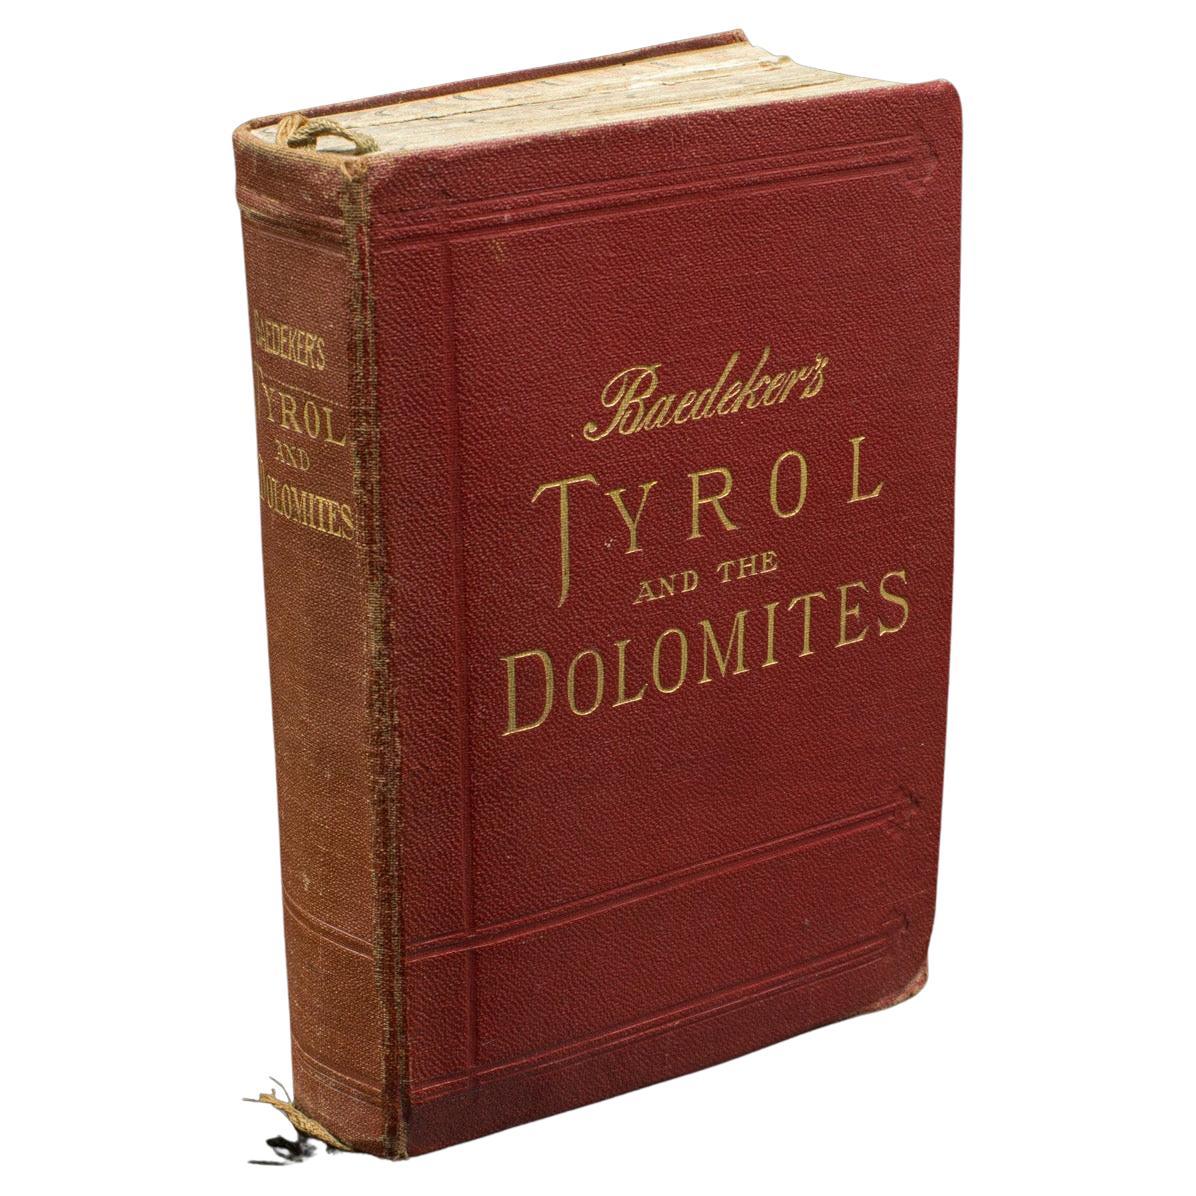 Vintage-Baedeker's Guide, Tyrol & Dolomites, Englische Sprache, veröffentlicht 1927